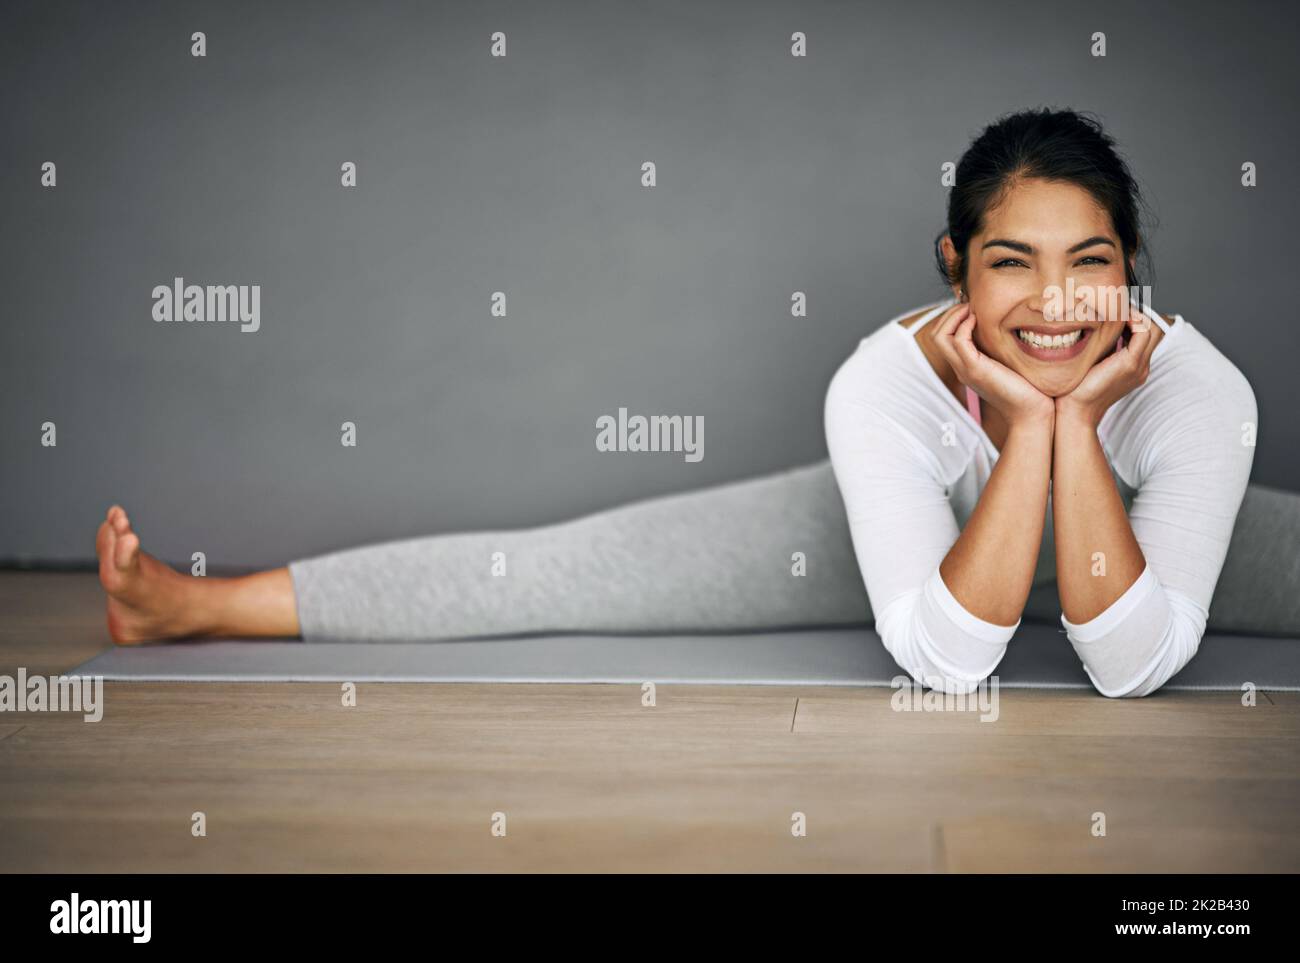 Yoga setzte mir dieses Lächeln ins Gesicht. Porträt einer attraktiven jungen Frau, die die Splits in ihrer Yoga-Routine macht. Stockfoto